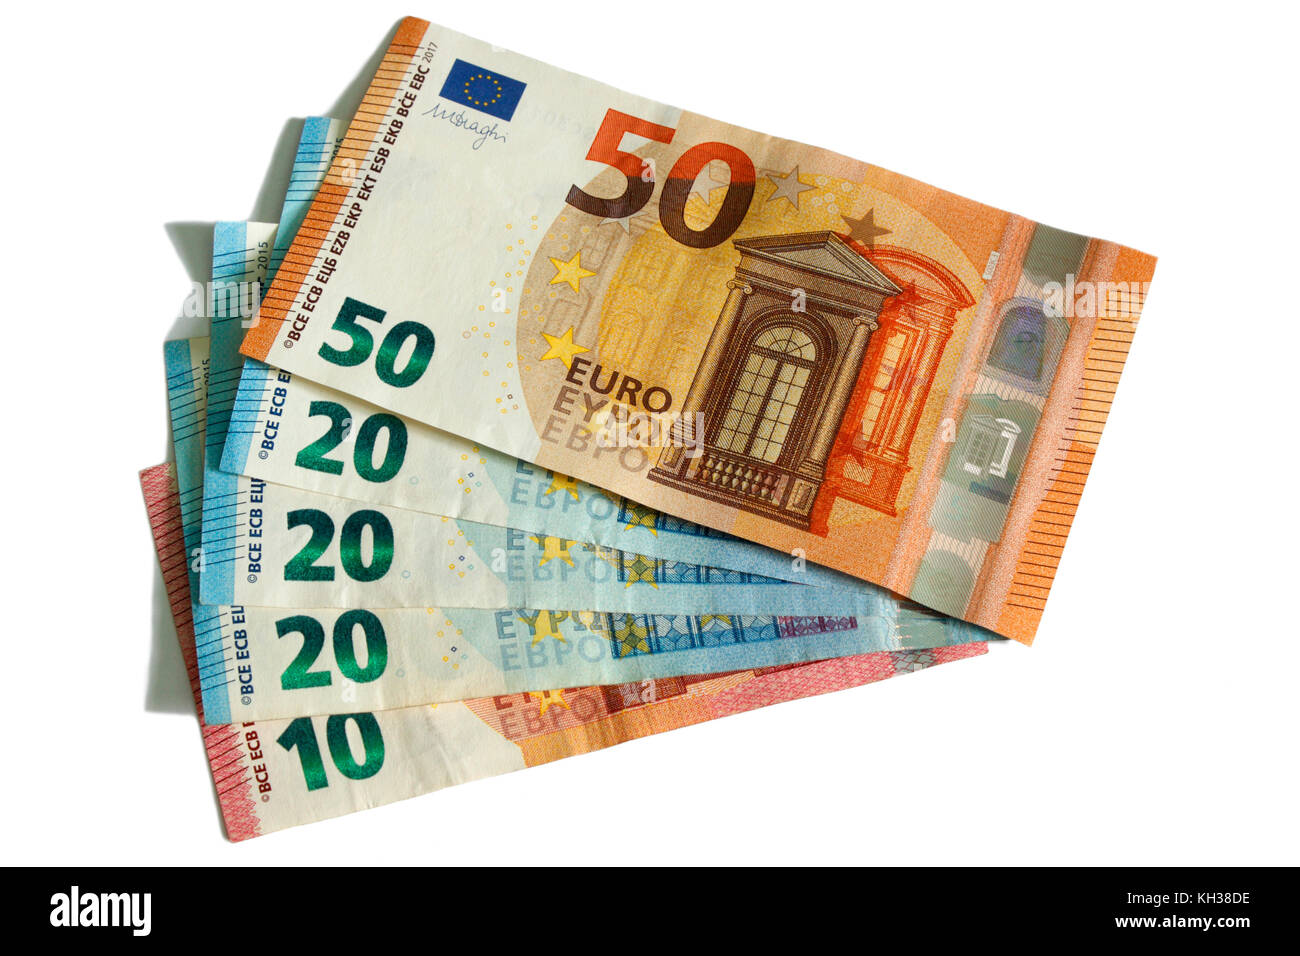 Billetes de Euros en pequeñas denominaciones dispuestos en forma de ventilador. Recorte en fondo blanco. Foto para ilustrar el concepto de presupuestación, salarios, gastos, etc. Foto de stock